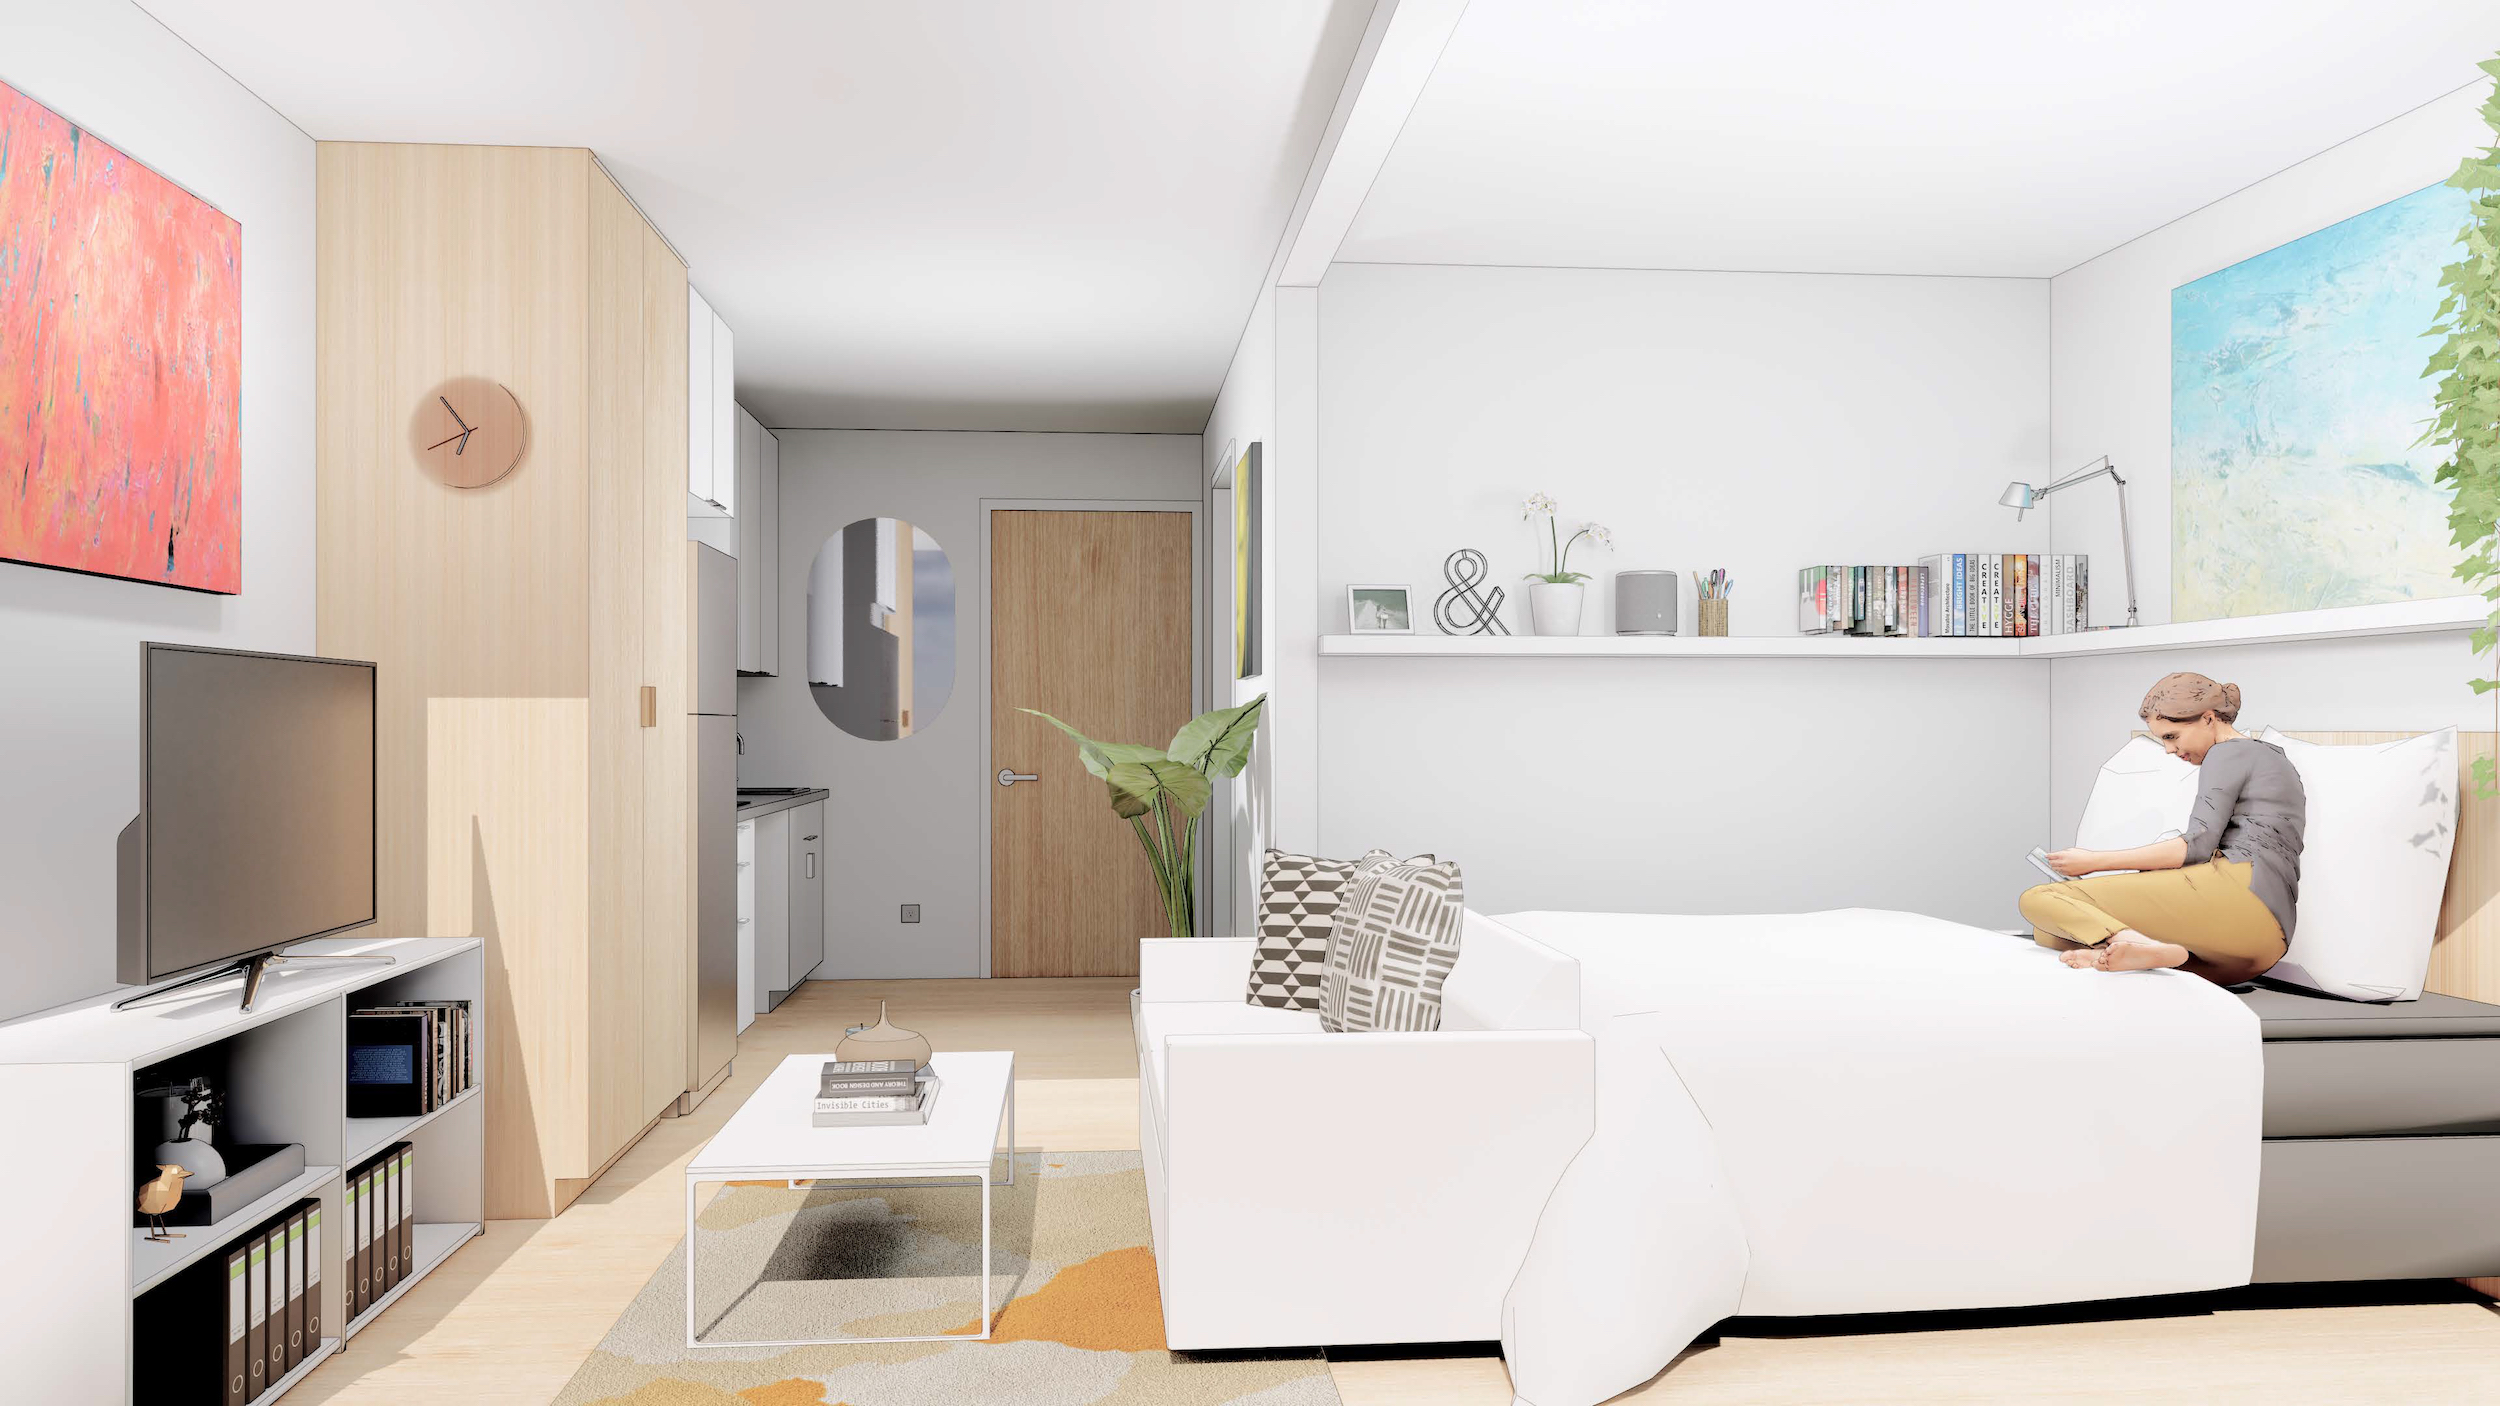 Studio apartment interior rendering modular